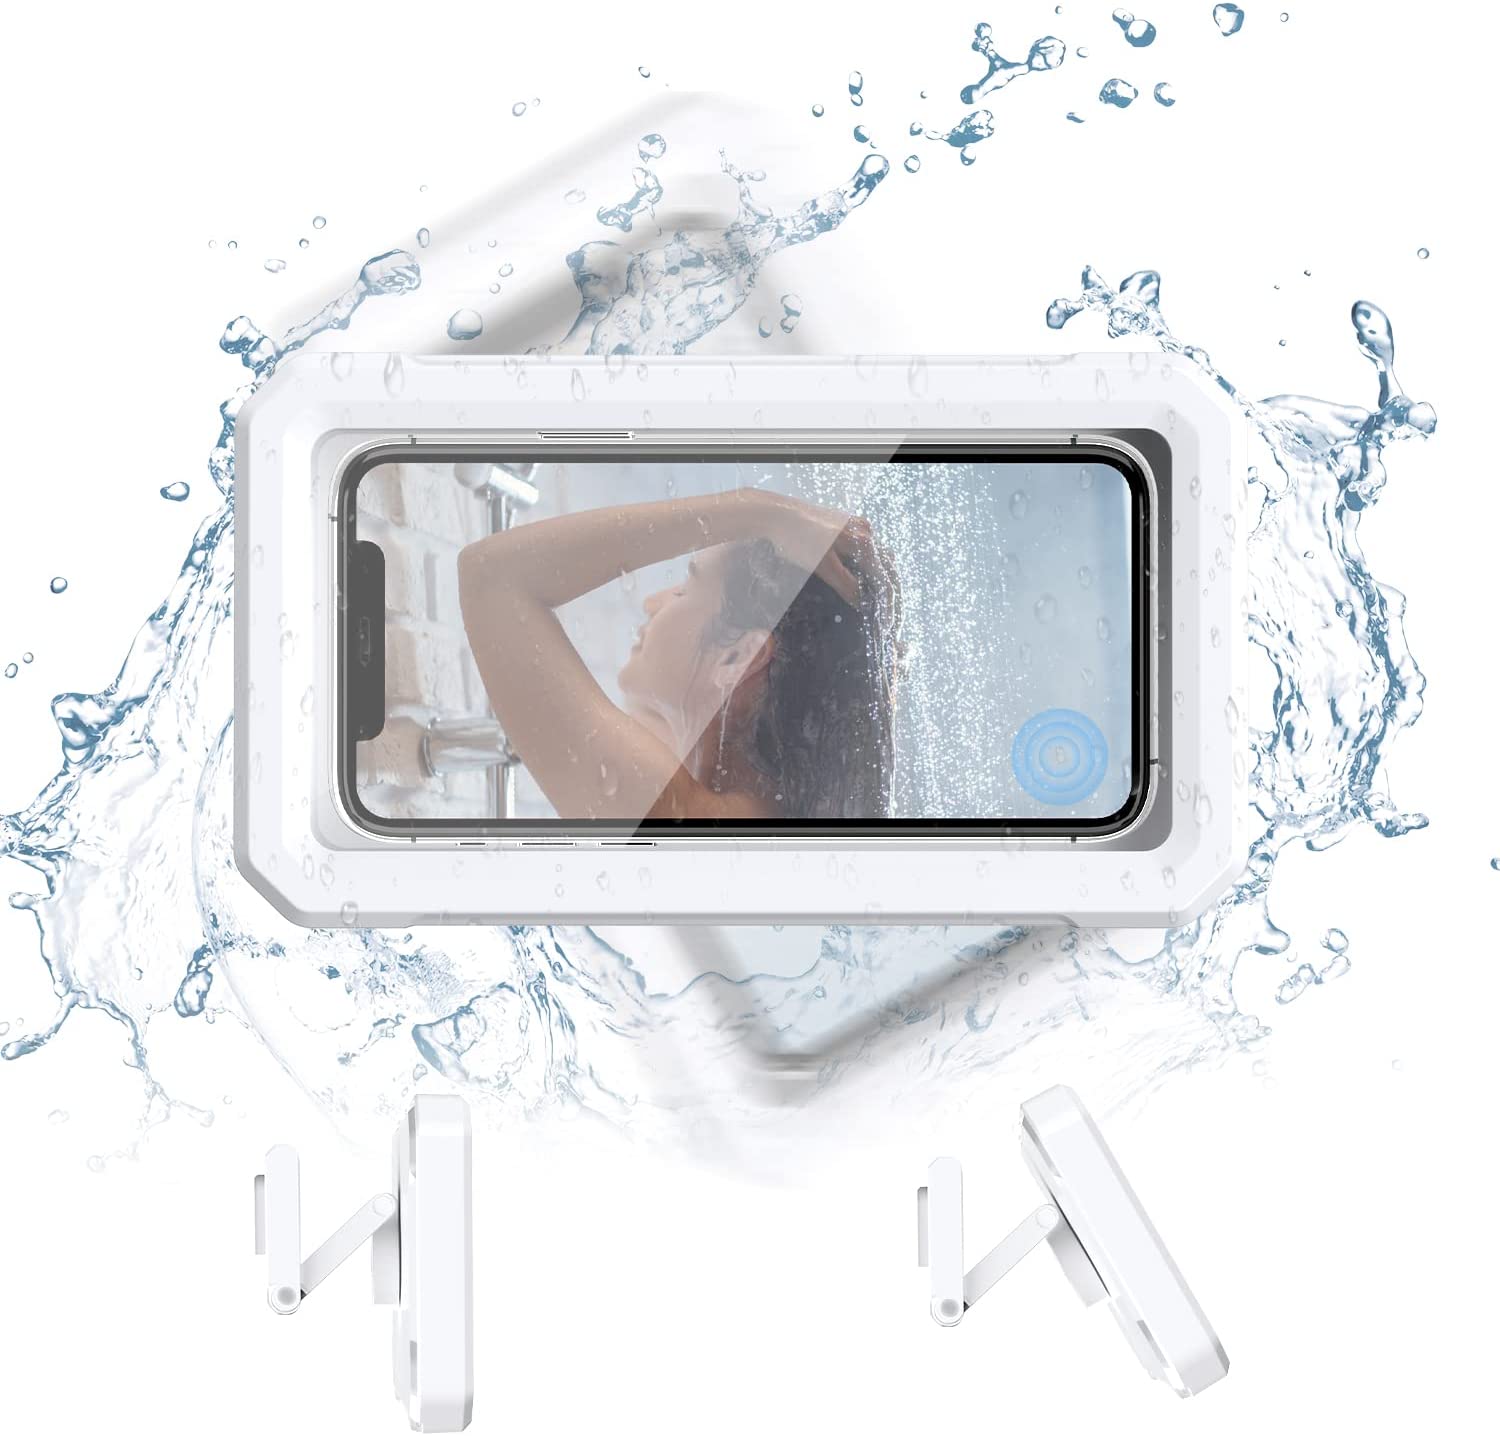 永遠の定番モデル 壁掛け 防水 ケース スタンド お風呂用 ホルダー スマホ お風呂 iPhone